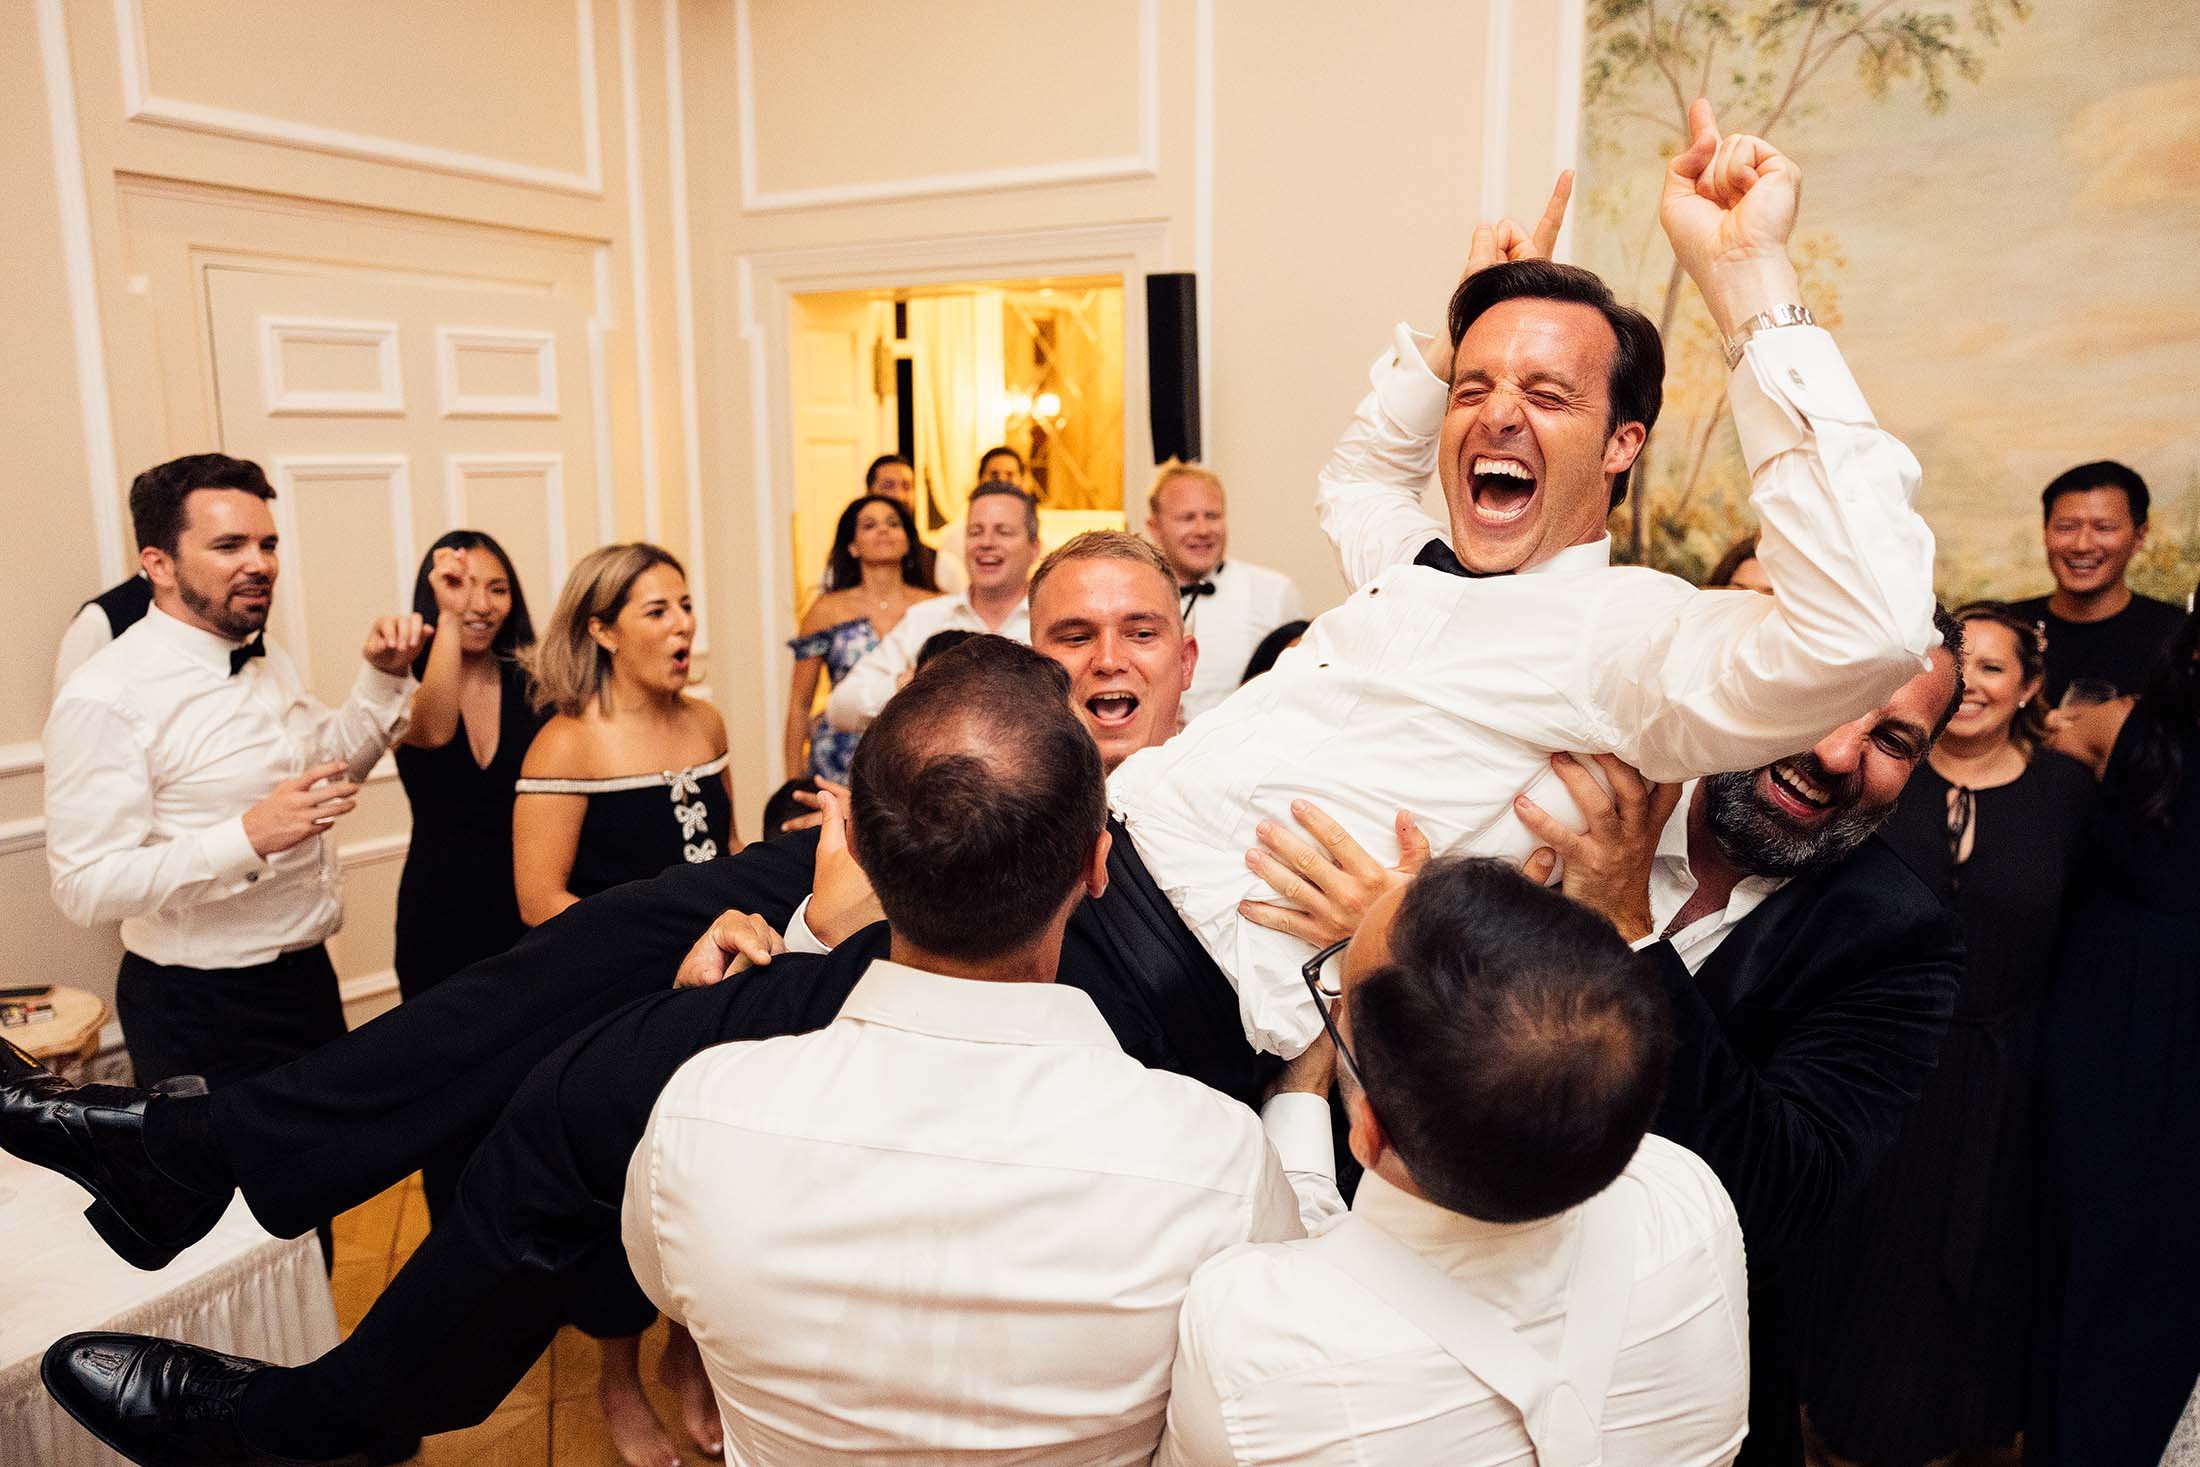 dancefloor moment at Switzerland wedding